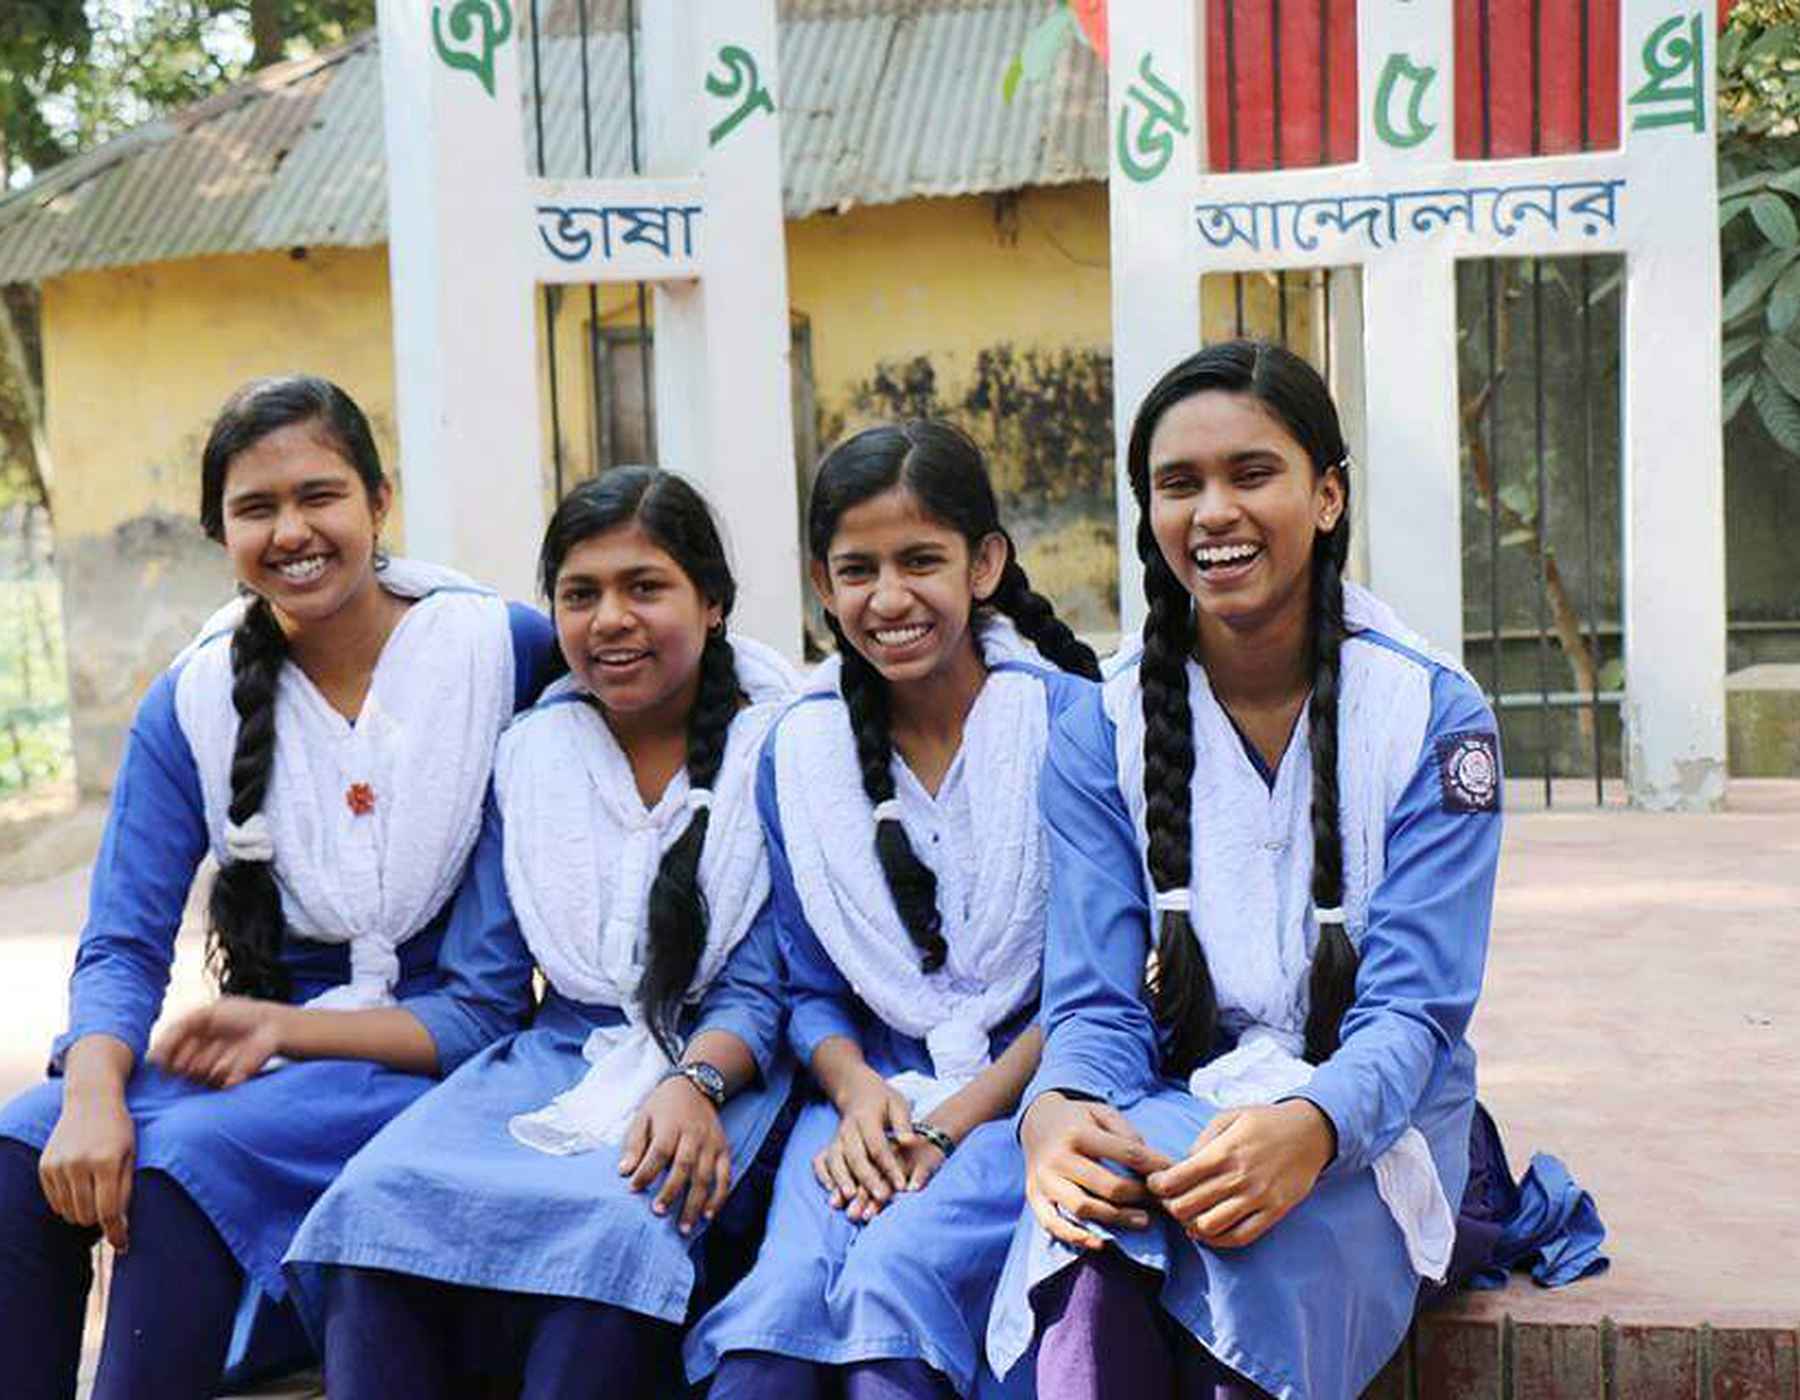 Quatre jeunes femmes au Bangladesh rient en portant un uniforme bleu et des foulards blancs.